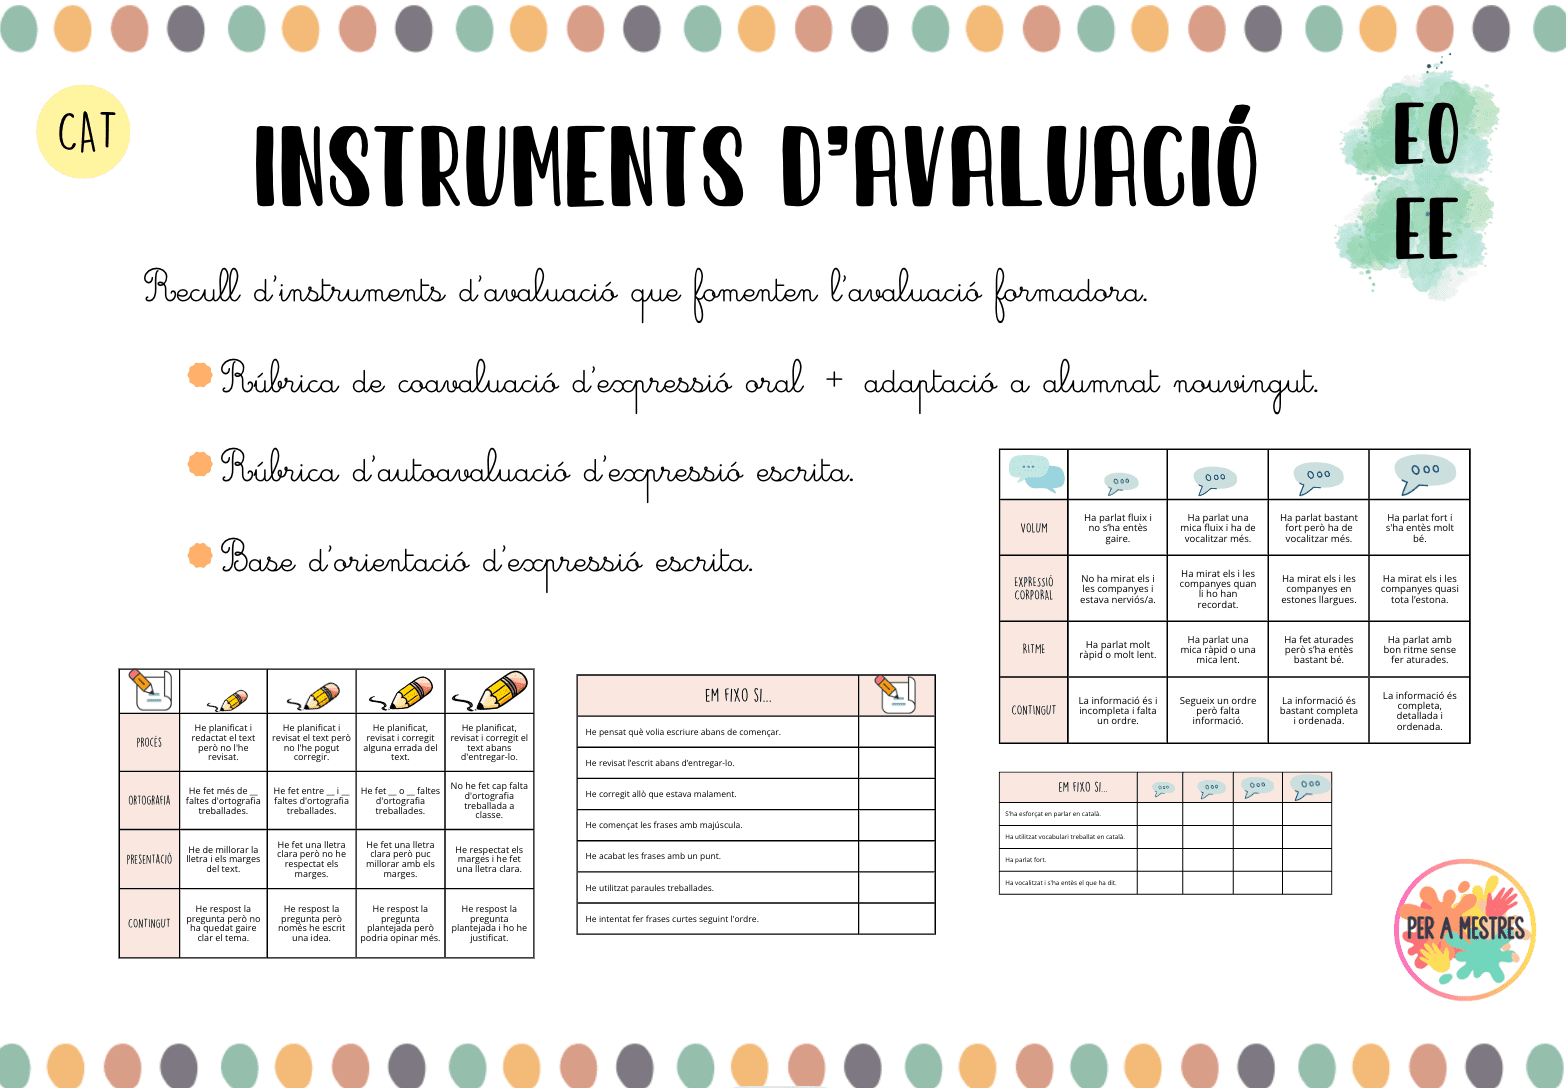 Instruments d'avaluació